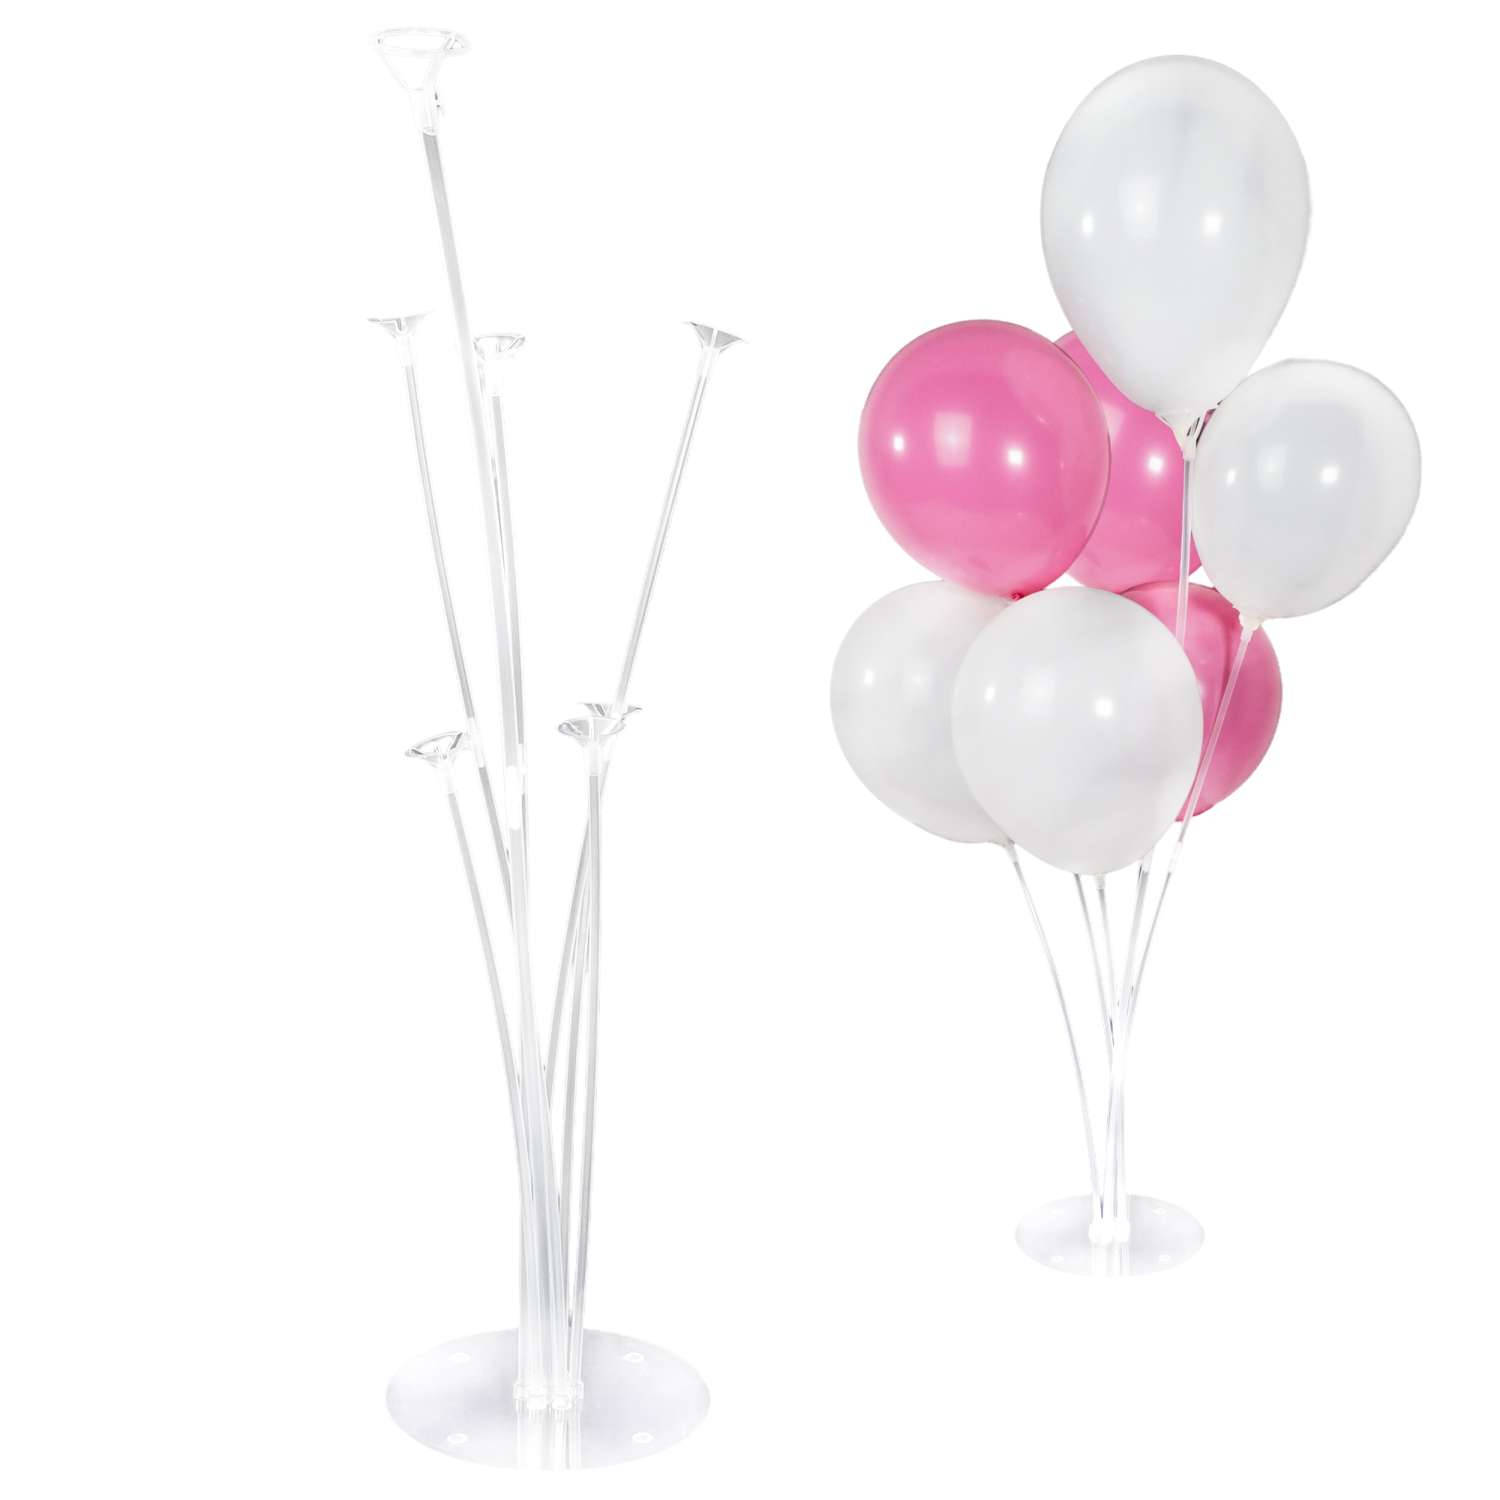 Intirilife Transparante ballonstandaard voor 7 ballonnen - 70 cm - Houder, standaard voor luchtballonnen, decoratie voor feest, bruiloft, verjaardag, babyborrel